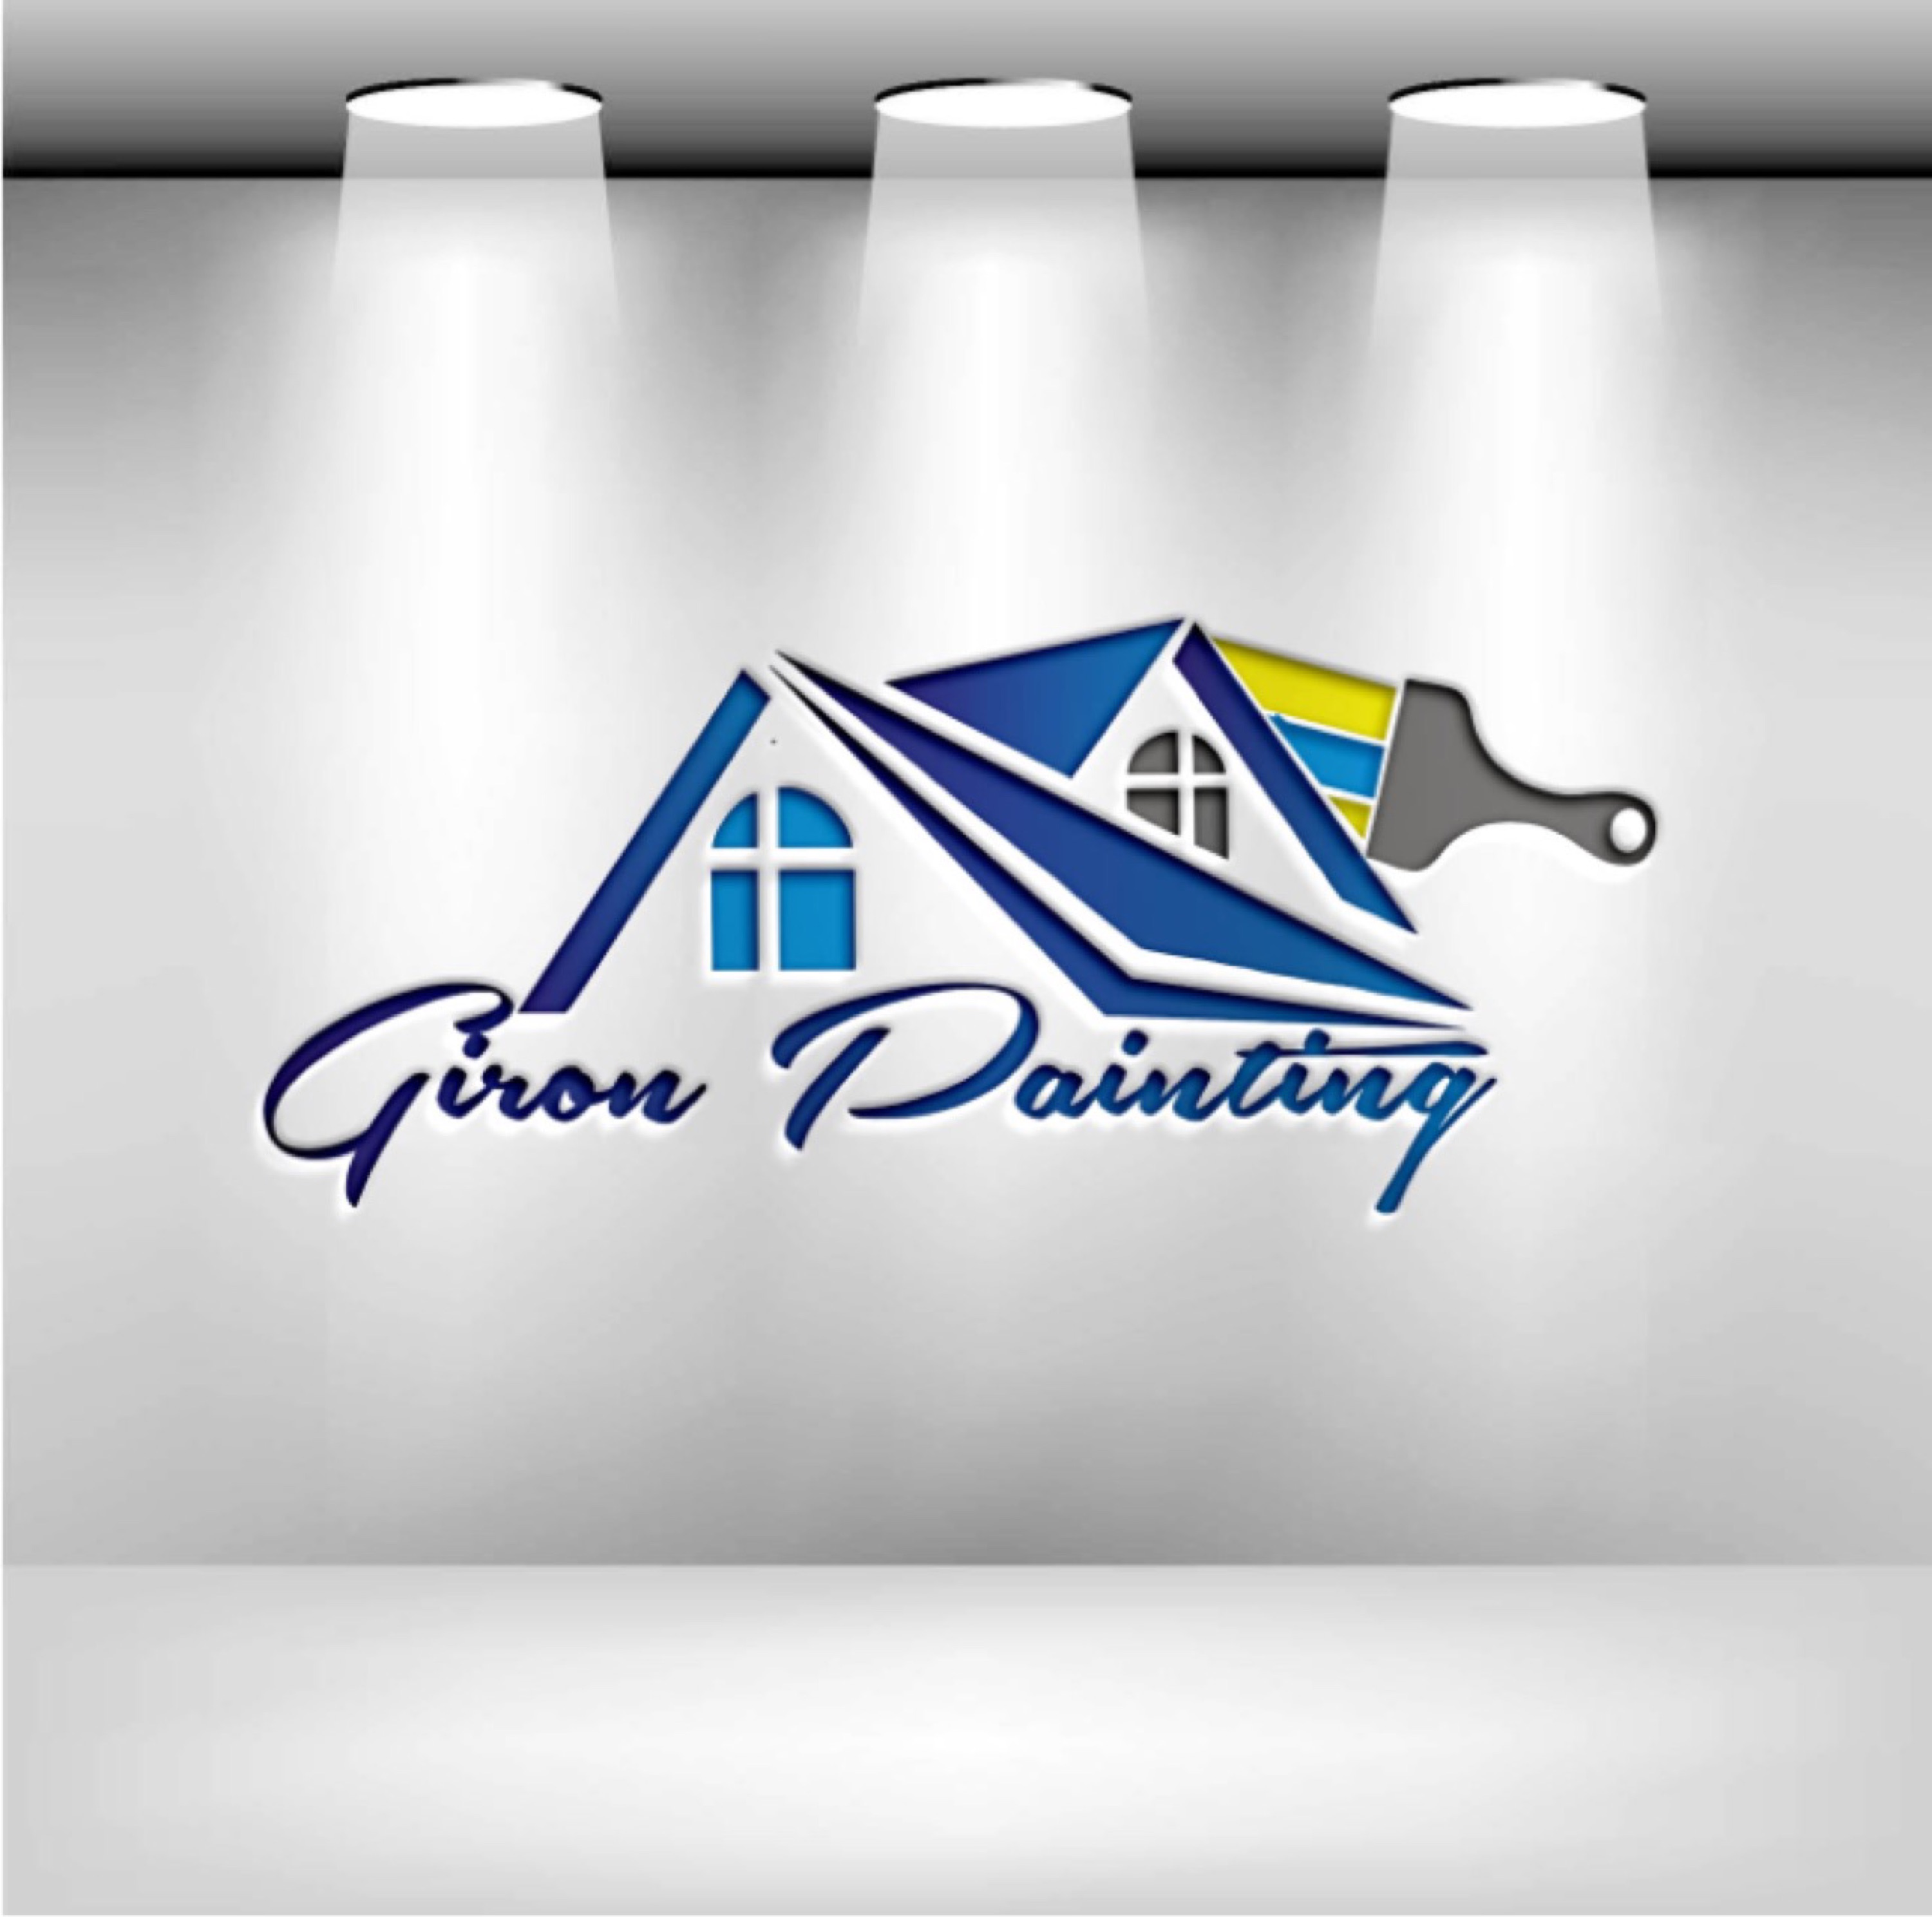 Giron Painting Logo